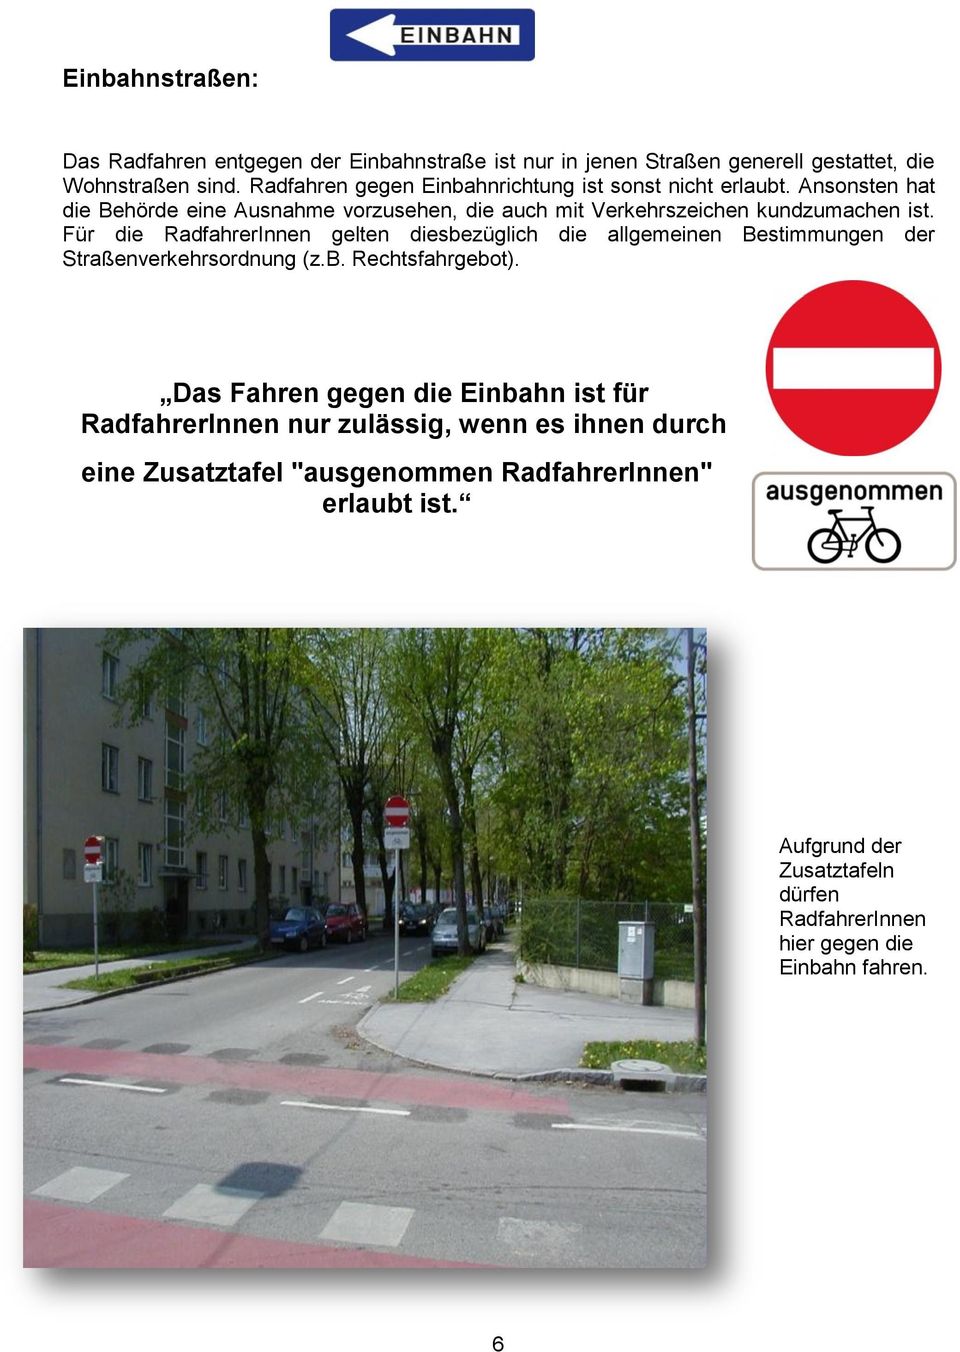 Für die RadfahrerInnen gelten diesbezüglich die allgemeinen Bestimmungen der Straßenverkehrsordnung (z.b. Rechtsfahrgebot).